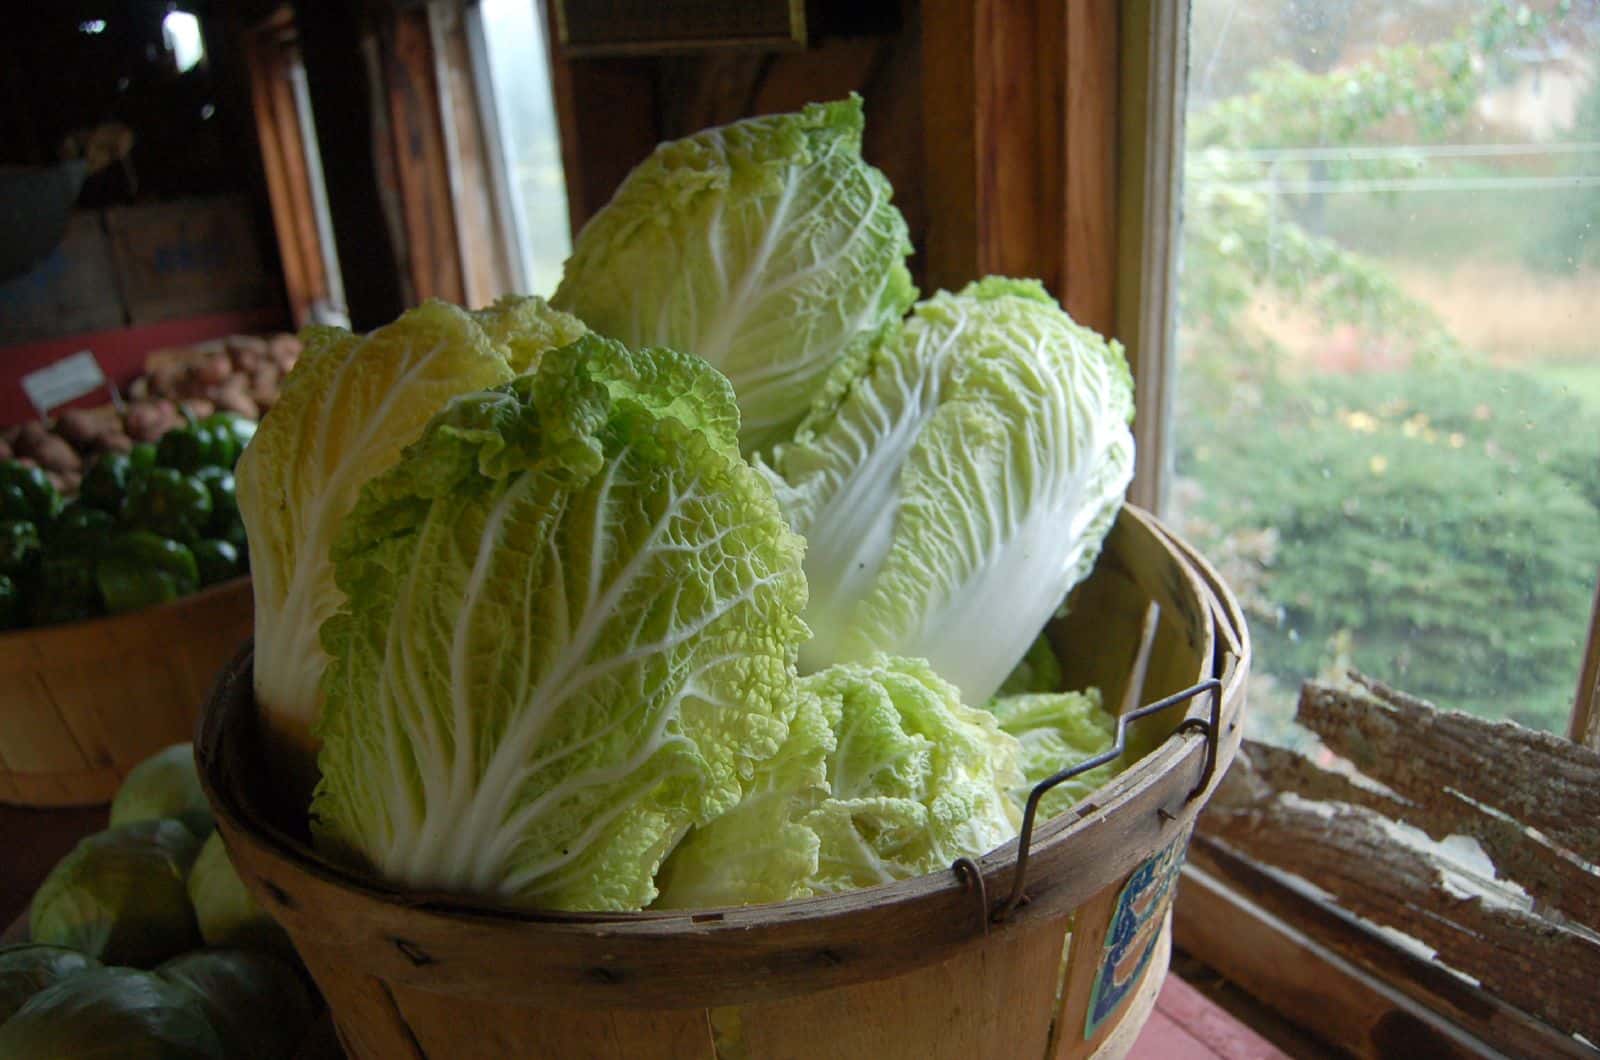 #44 I "Like" Cabbage.